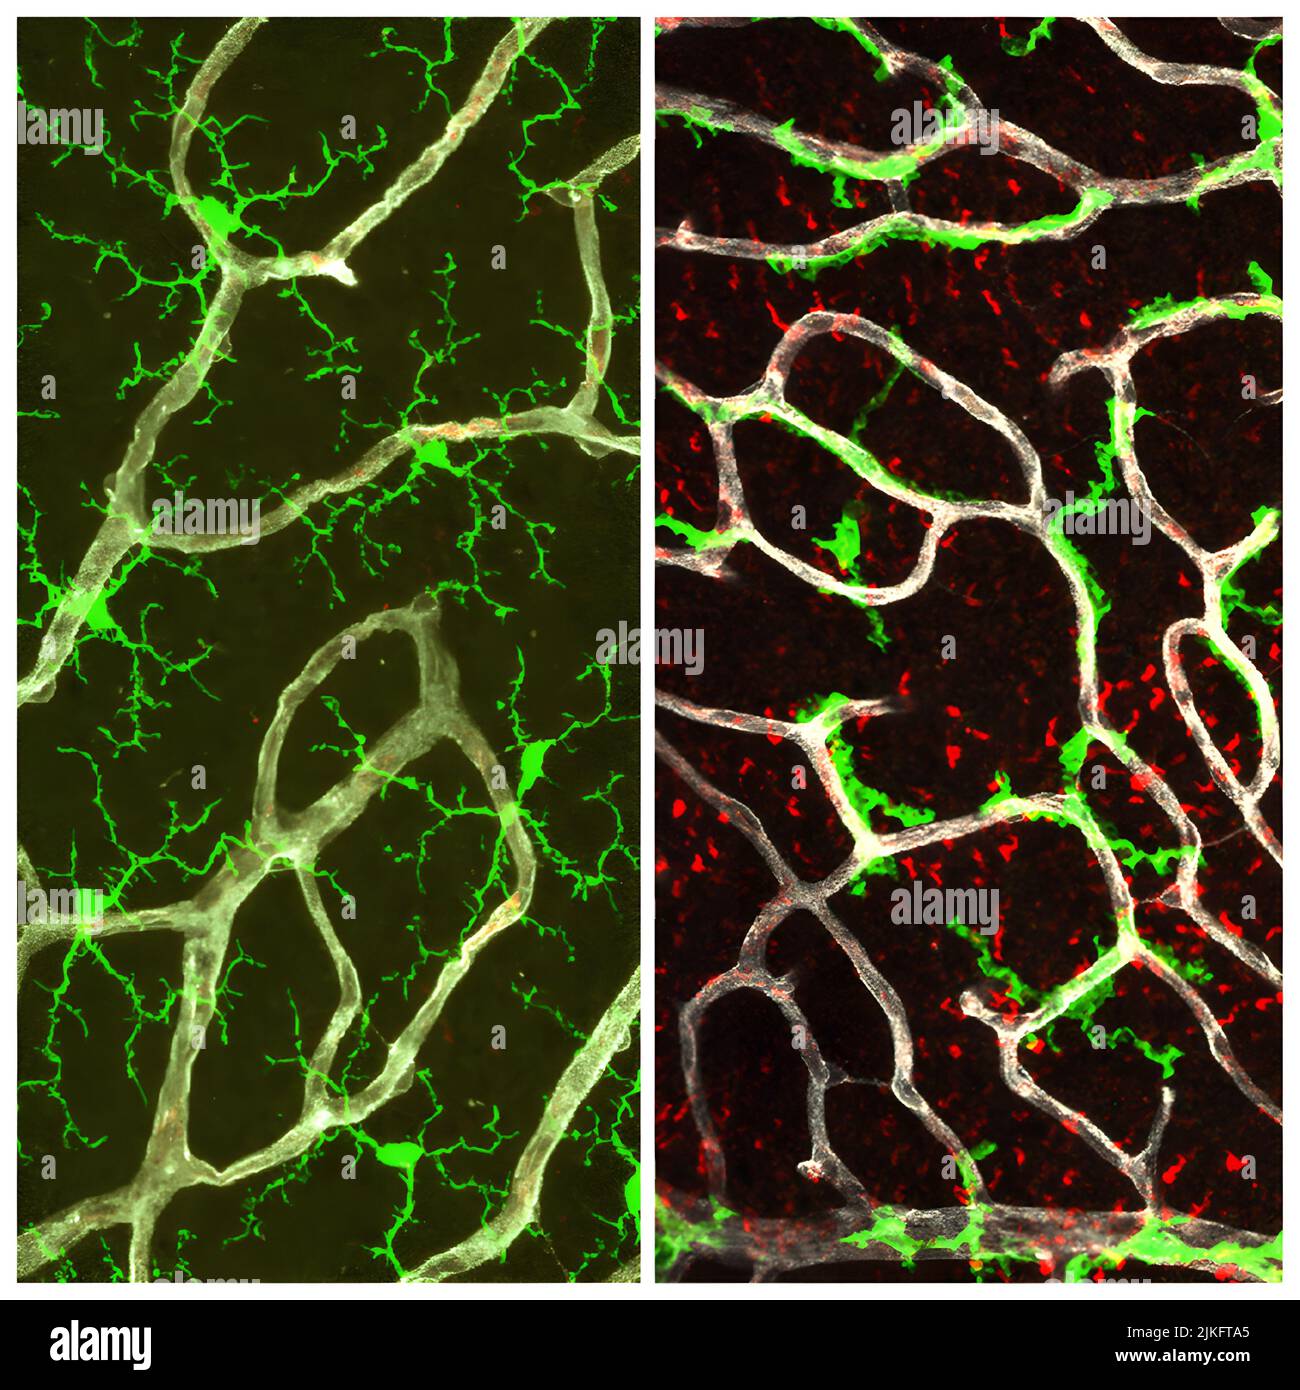 Bei gesunder Netzhaut (links) haben Mikroglia (grün) eine verzweigte Struktur, die die Netzhaut bedeckt. Ohne TGF-Signalisierung (rechts) verlieren Mikroglia ihre verzweigte Struktur und binden sich an Blutgefäße (weiß). M'llers Gliafolge wurde anormal und erwarb Aktivierungsmarker (rot). Stockfoto